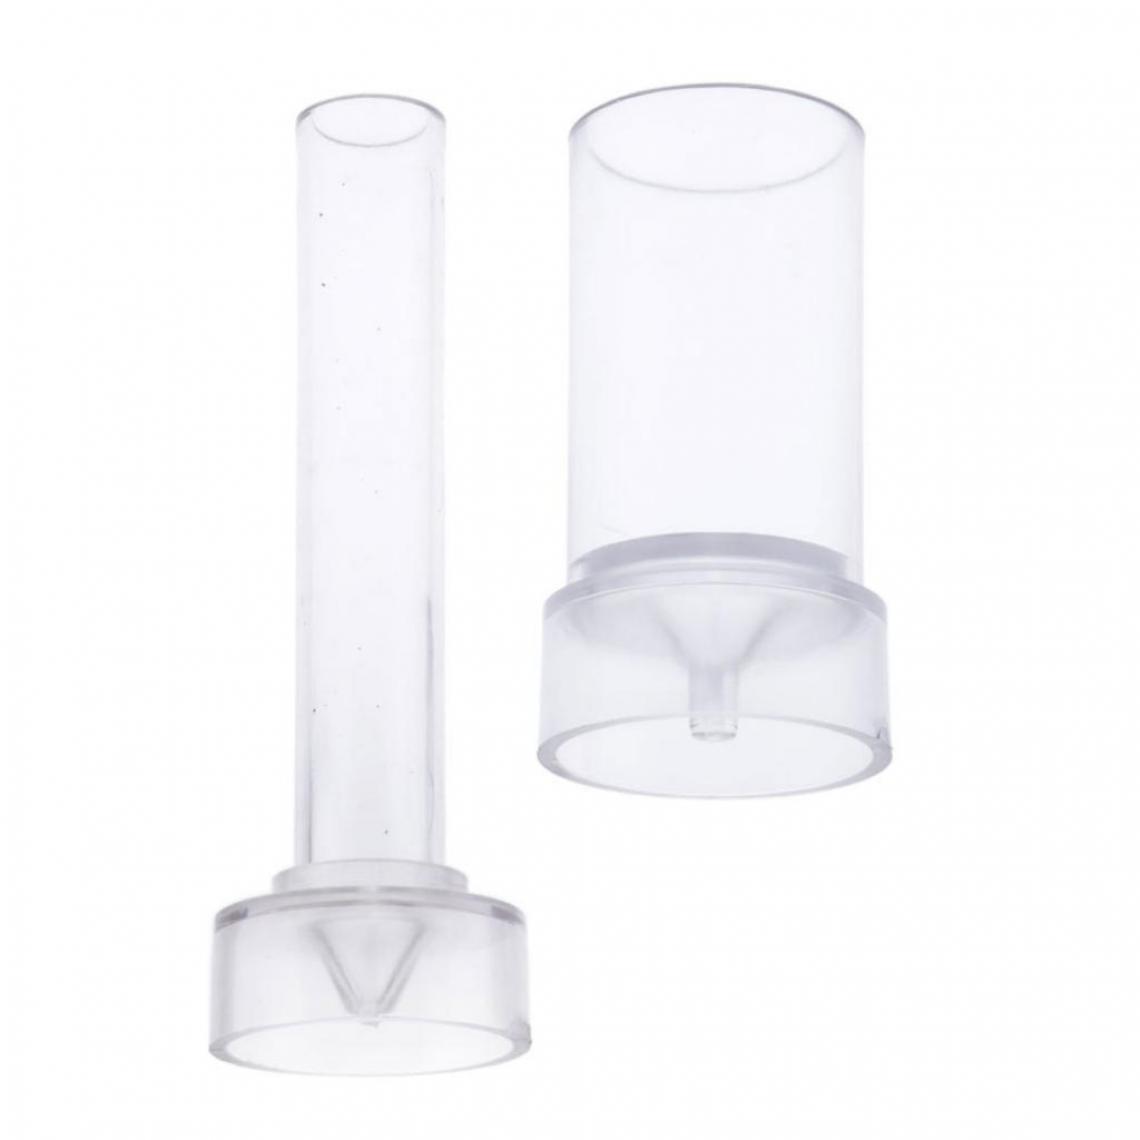 marque generique - 2x Moule bougies Cylindre (Sommet Pointu) en Plastique Décorative DIY Cadeau Baptême Naissance - Bougies